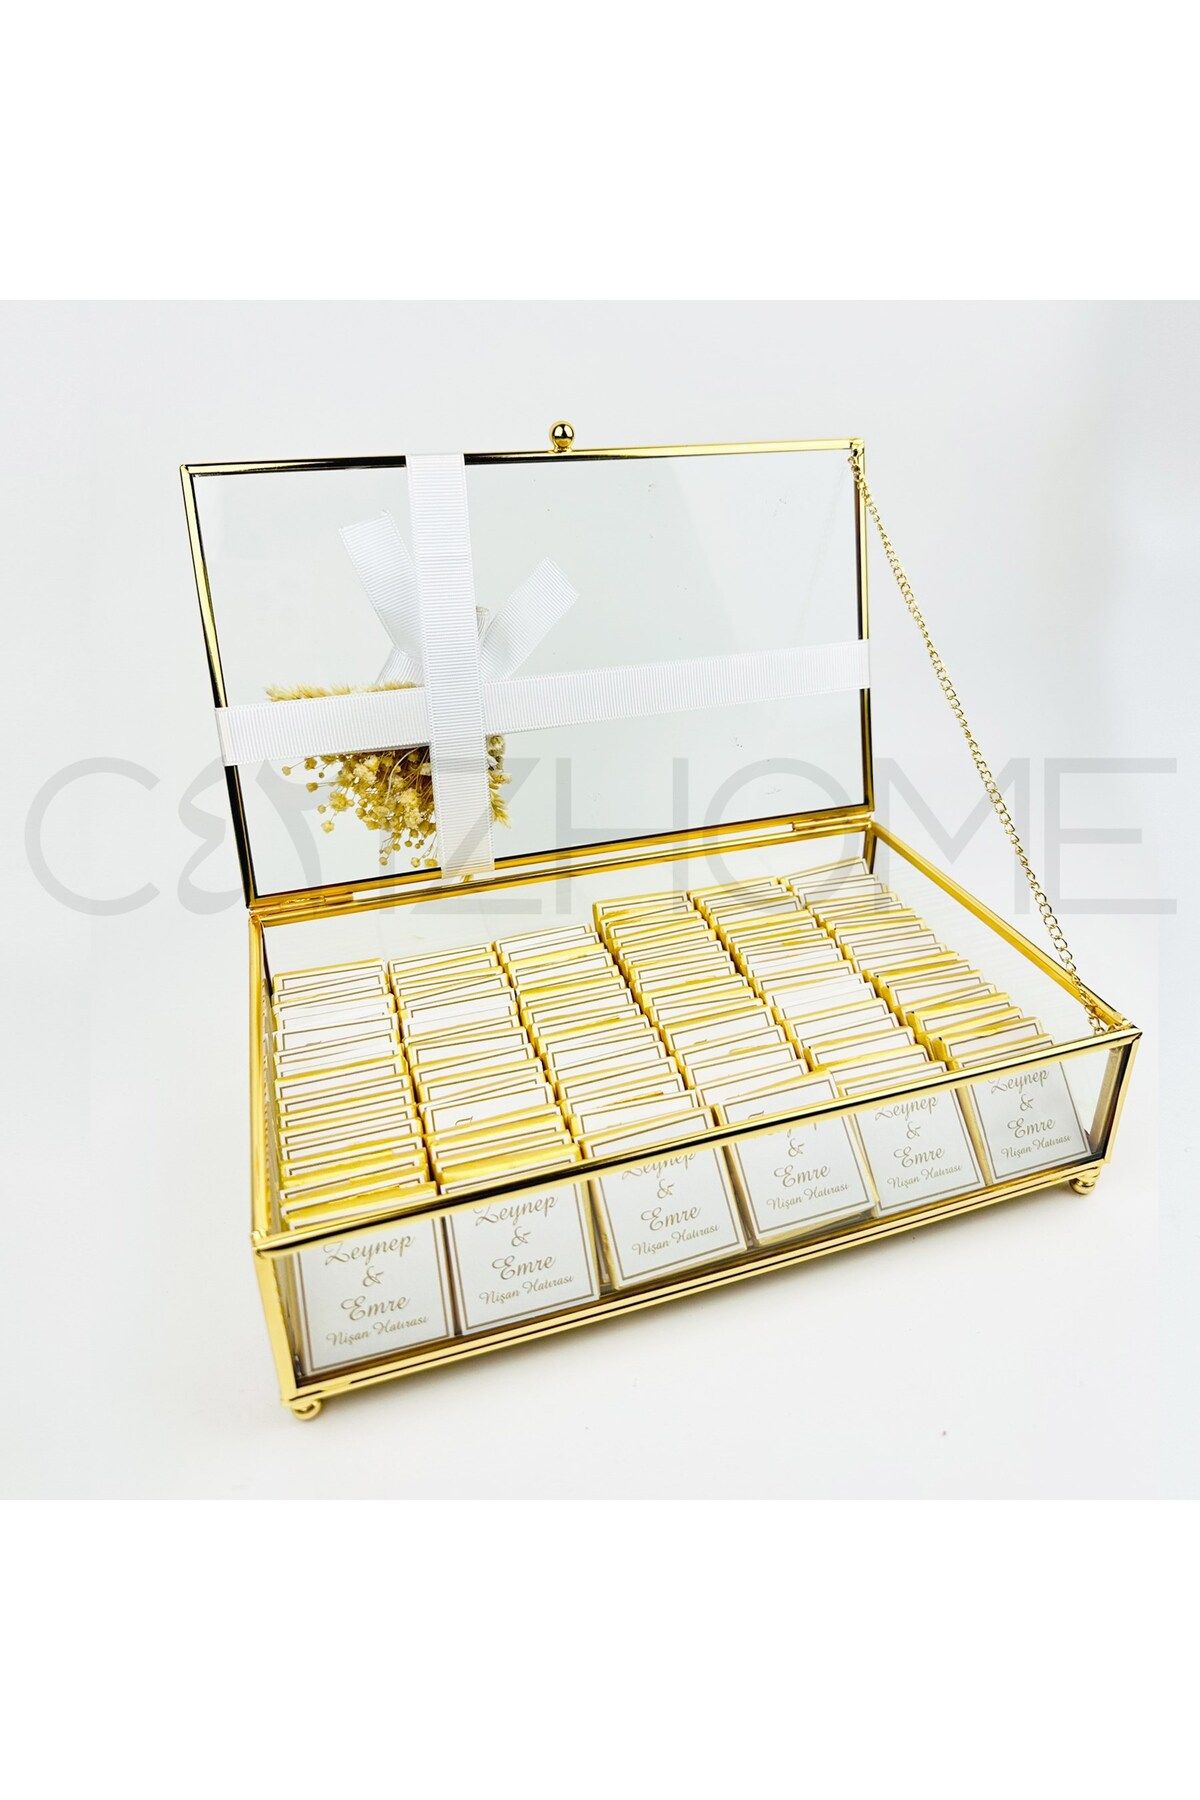 CyzHome Gold 15x25 Cam Kutu Söz Nişam, Kız Isteme 100 Adet Kişiye Özel Isim Etiketli Çikolata Kutusu